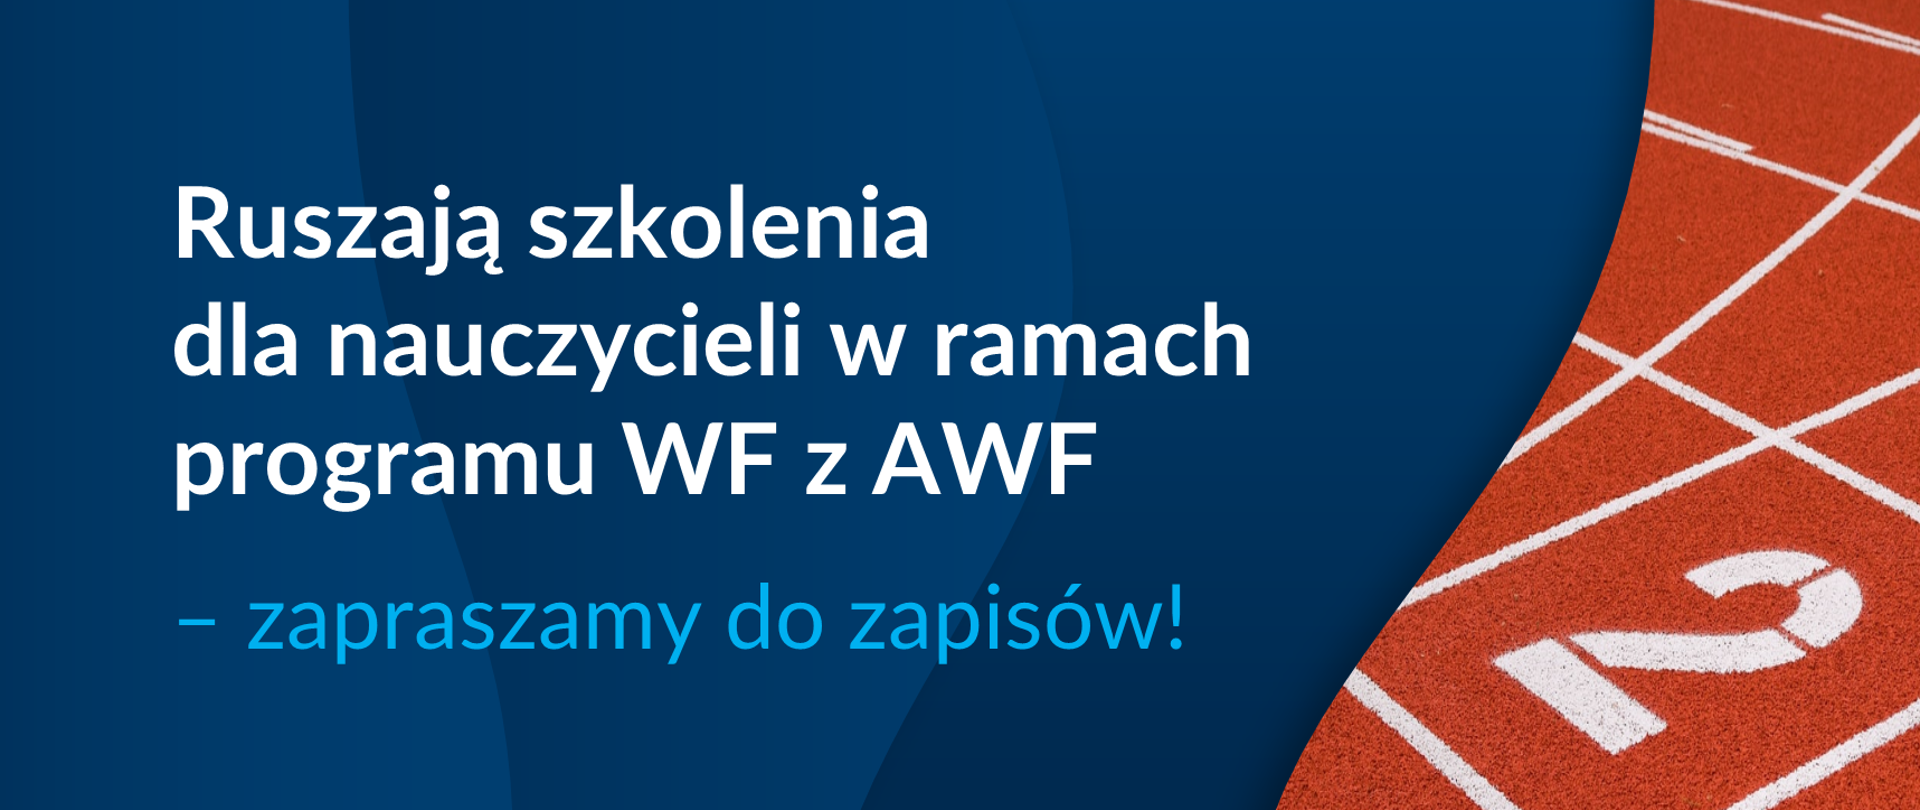 Grafika z tekstem: "Ruszają szkolenia dla nauczycieli w ramach programu WF z AWF - zapraszamy do zapisów!"